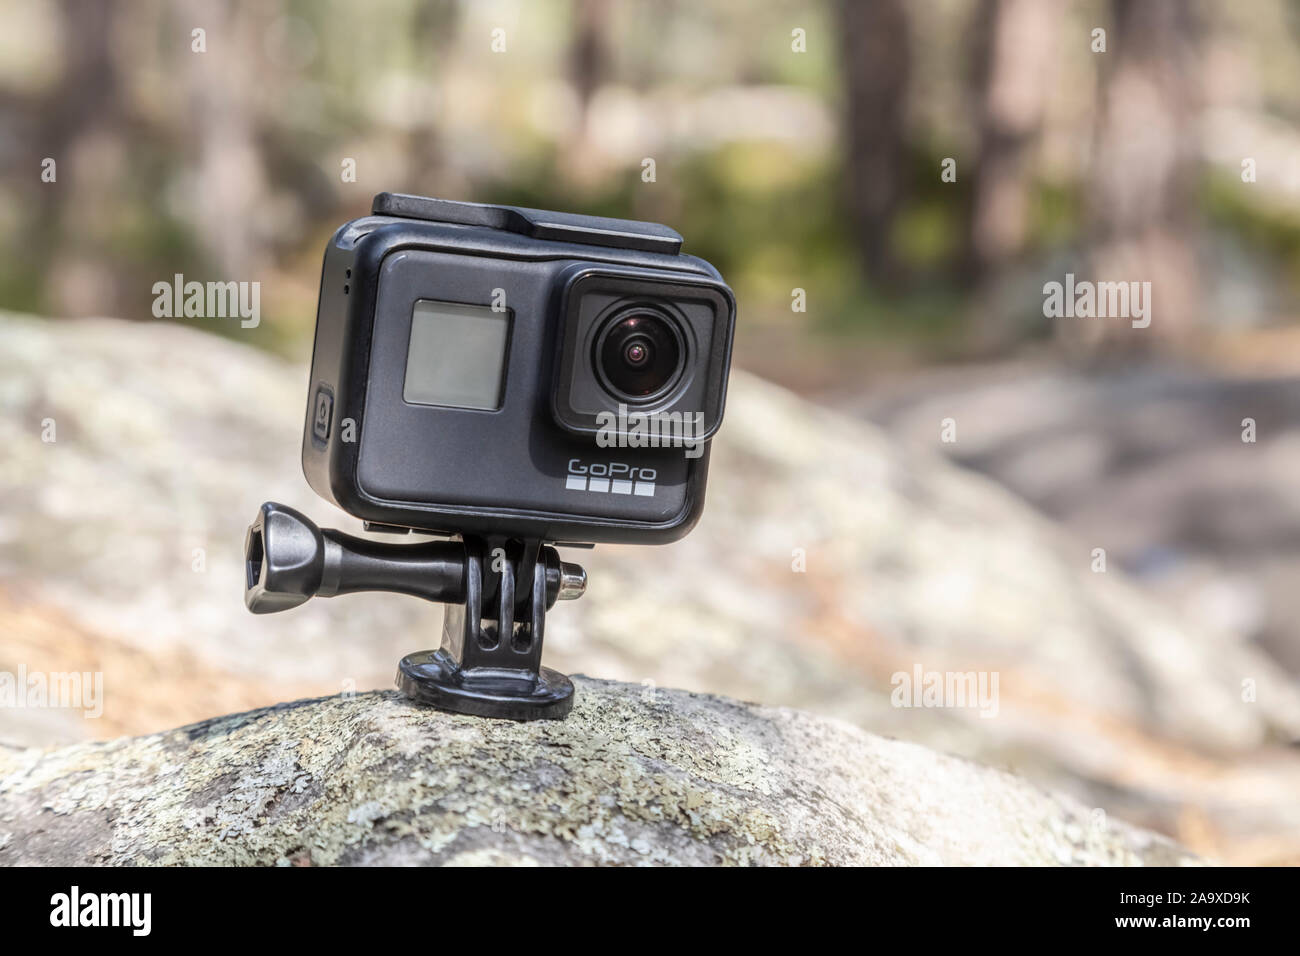 Fontainebleau, Francia - 01 de mayo de 2019: imagen ilustrativa de una acción  cámara GoPro Hero 7 Negro al aire libre sobre una roca en un bosque  Fotografía de stock - Alamy